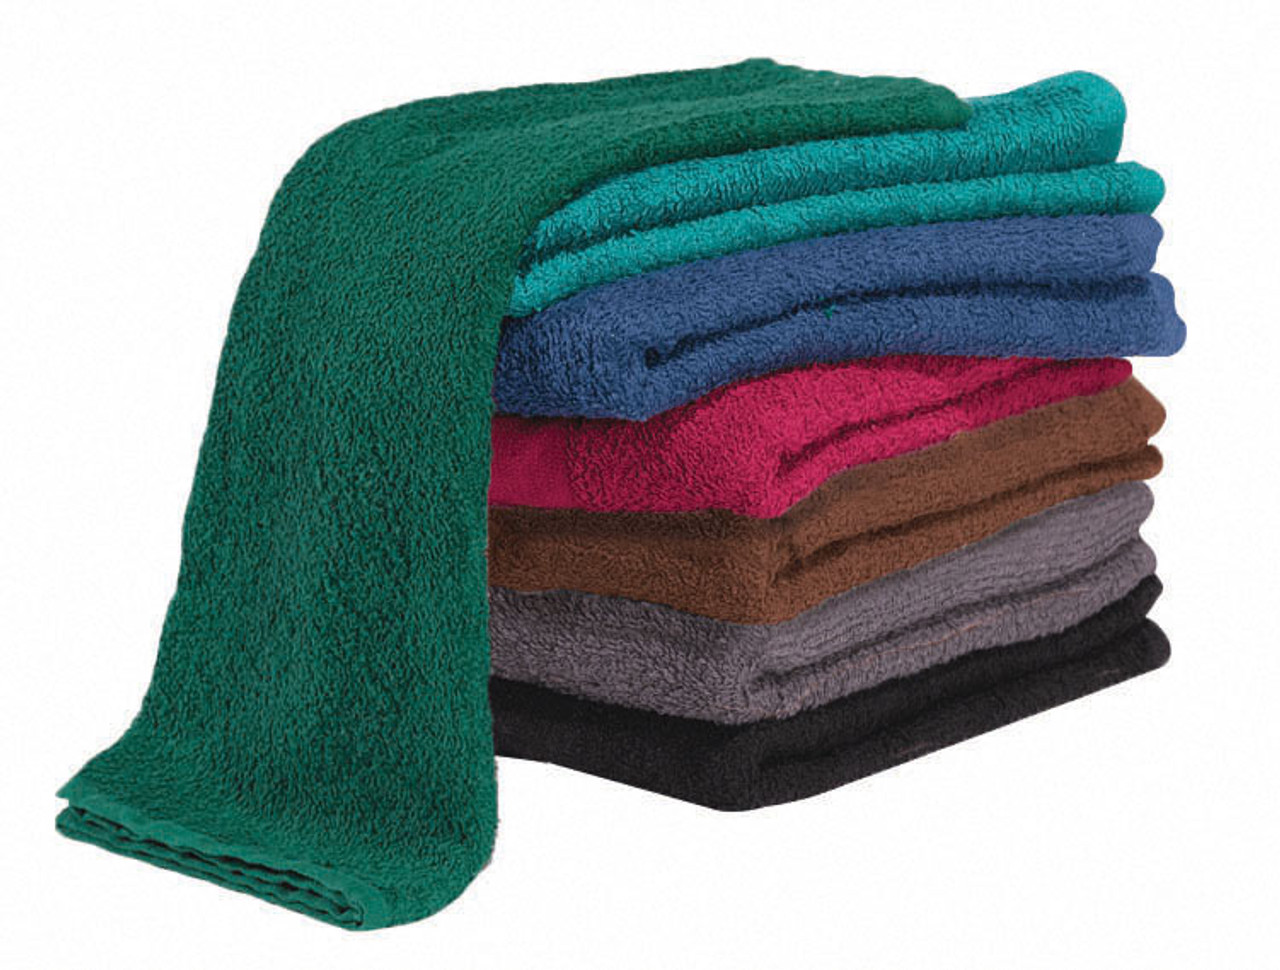 Salon Towels, Supreme Color Towels